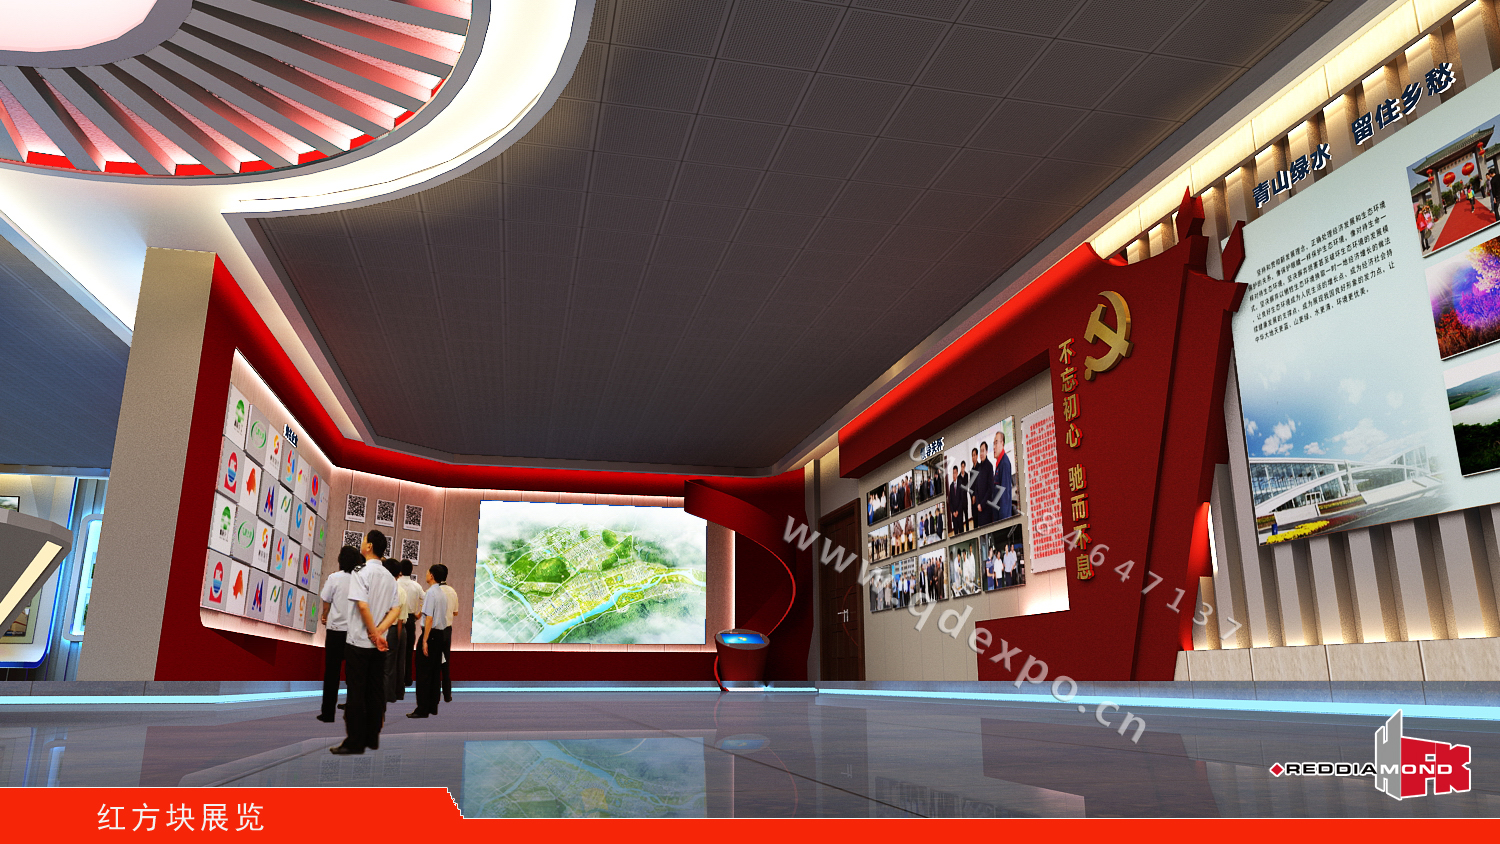 基层党建教育基地设计装饰图|红方块党建文化展厅设计策划